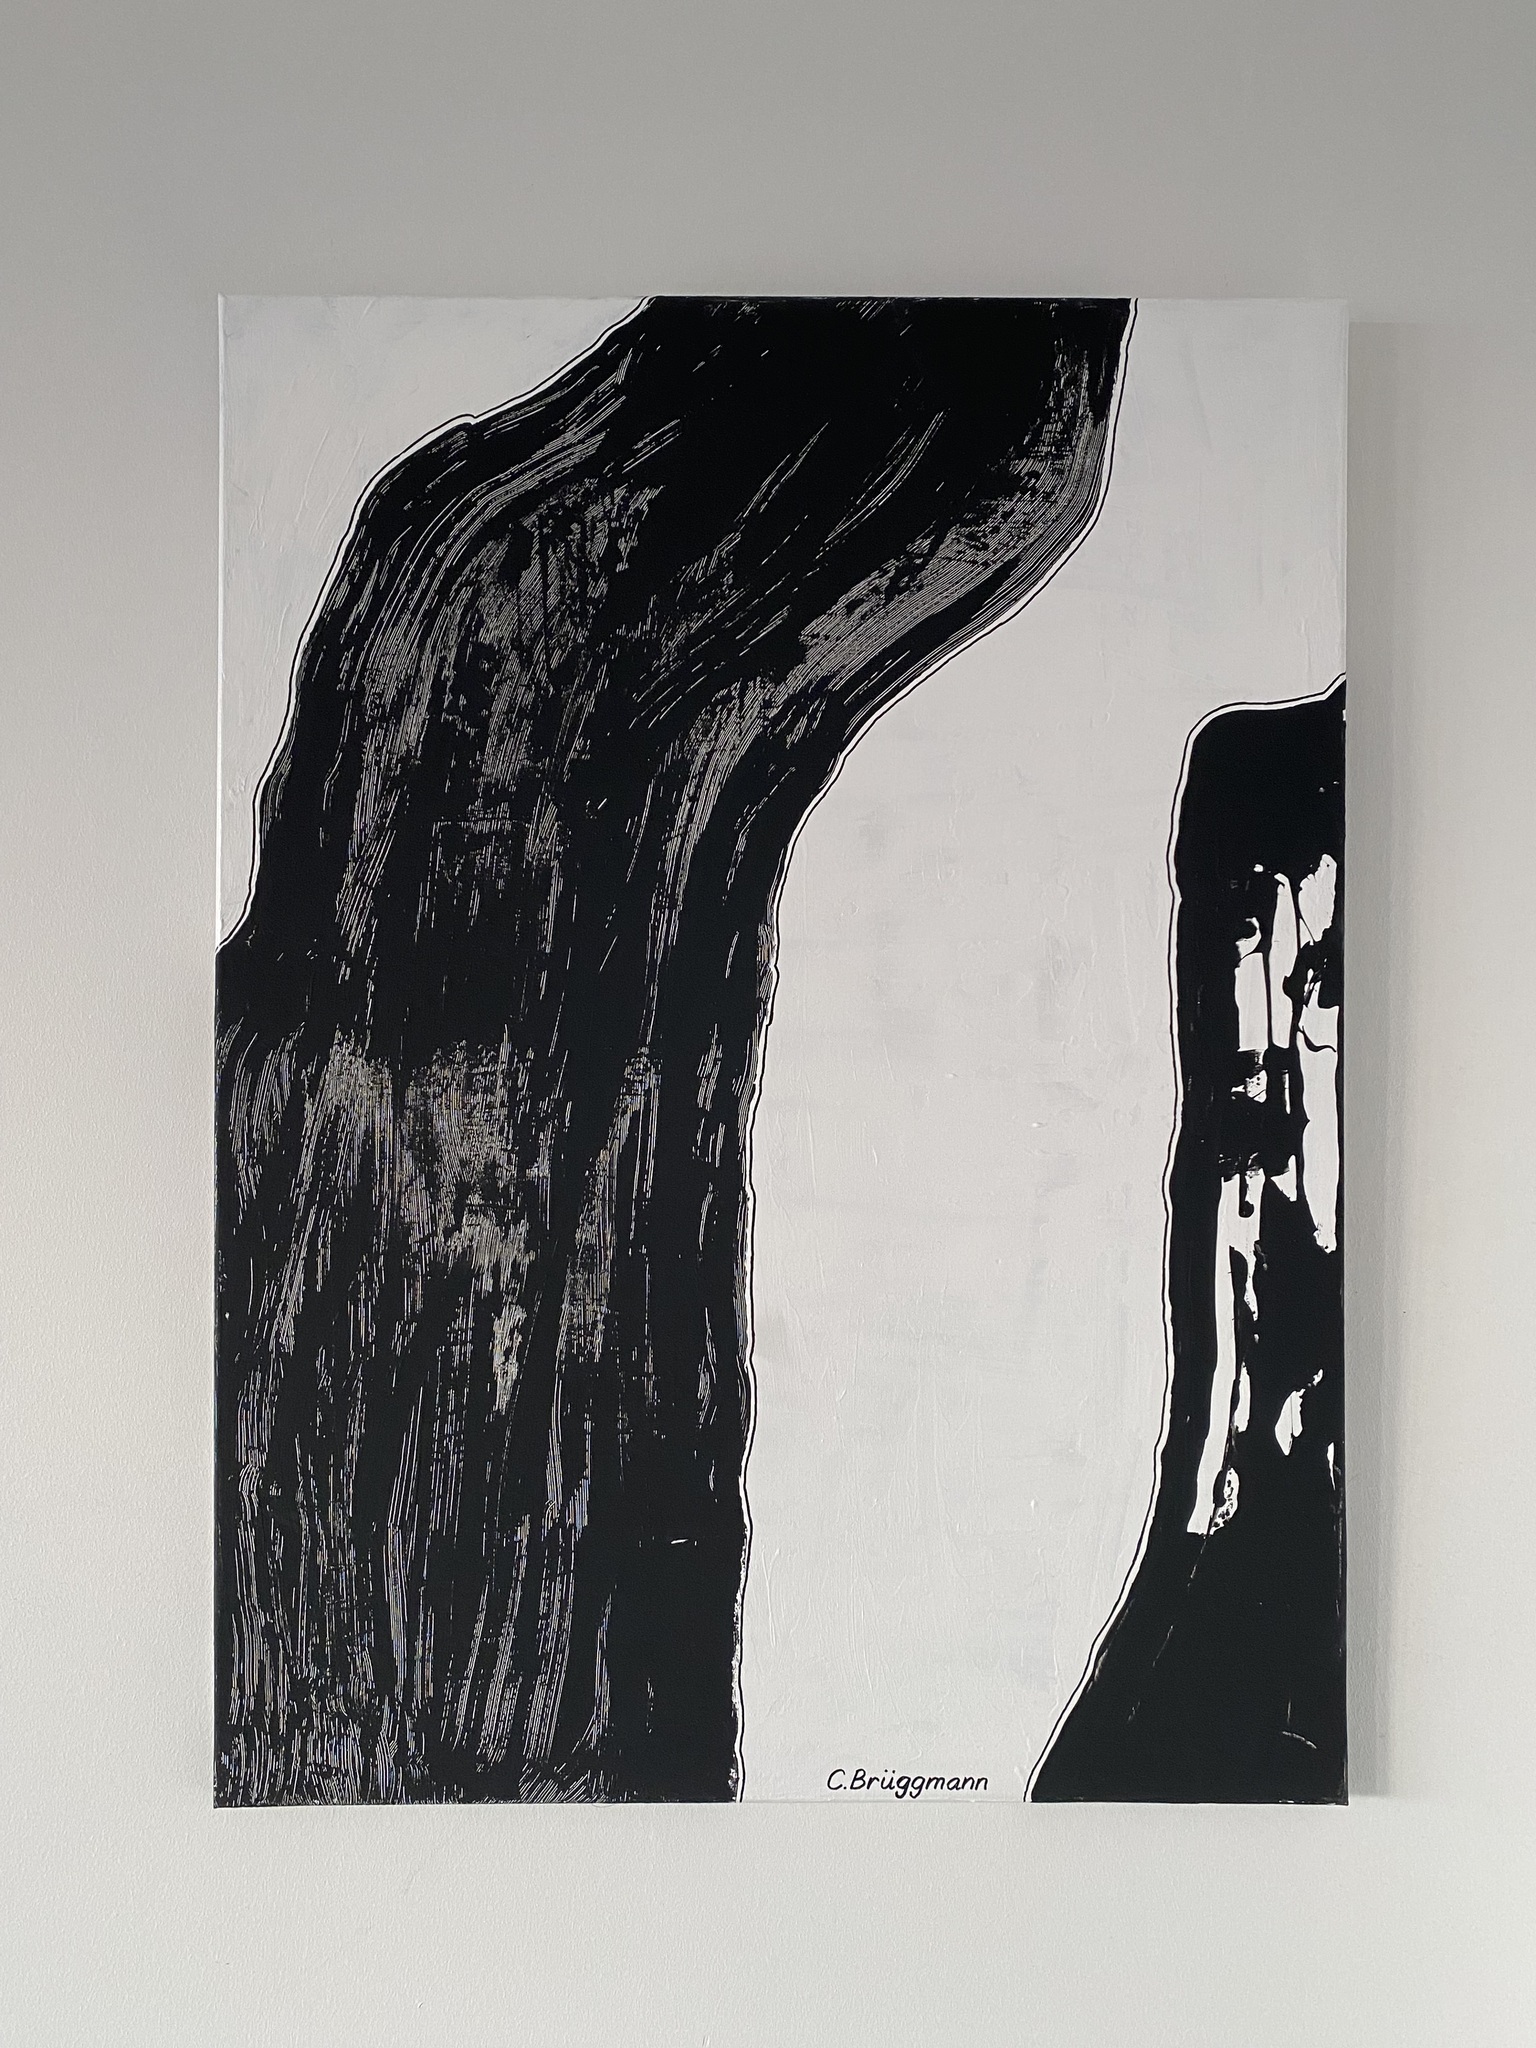 Abstrakt svartvit konst när den är som bäst! Stilren och snygg originalmålning av konstnär från Helsingborg i Sverige.